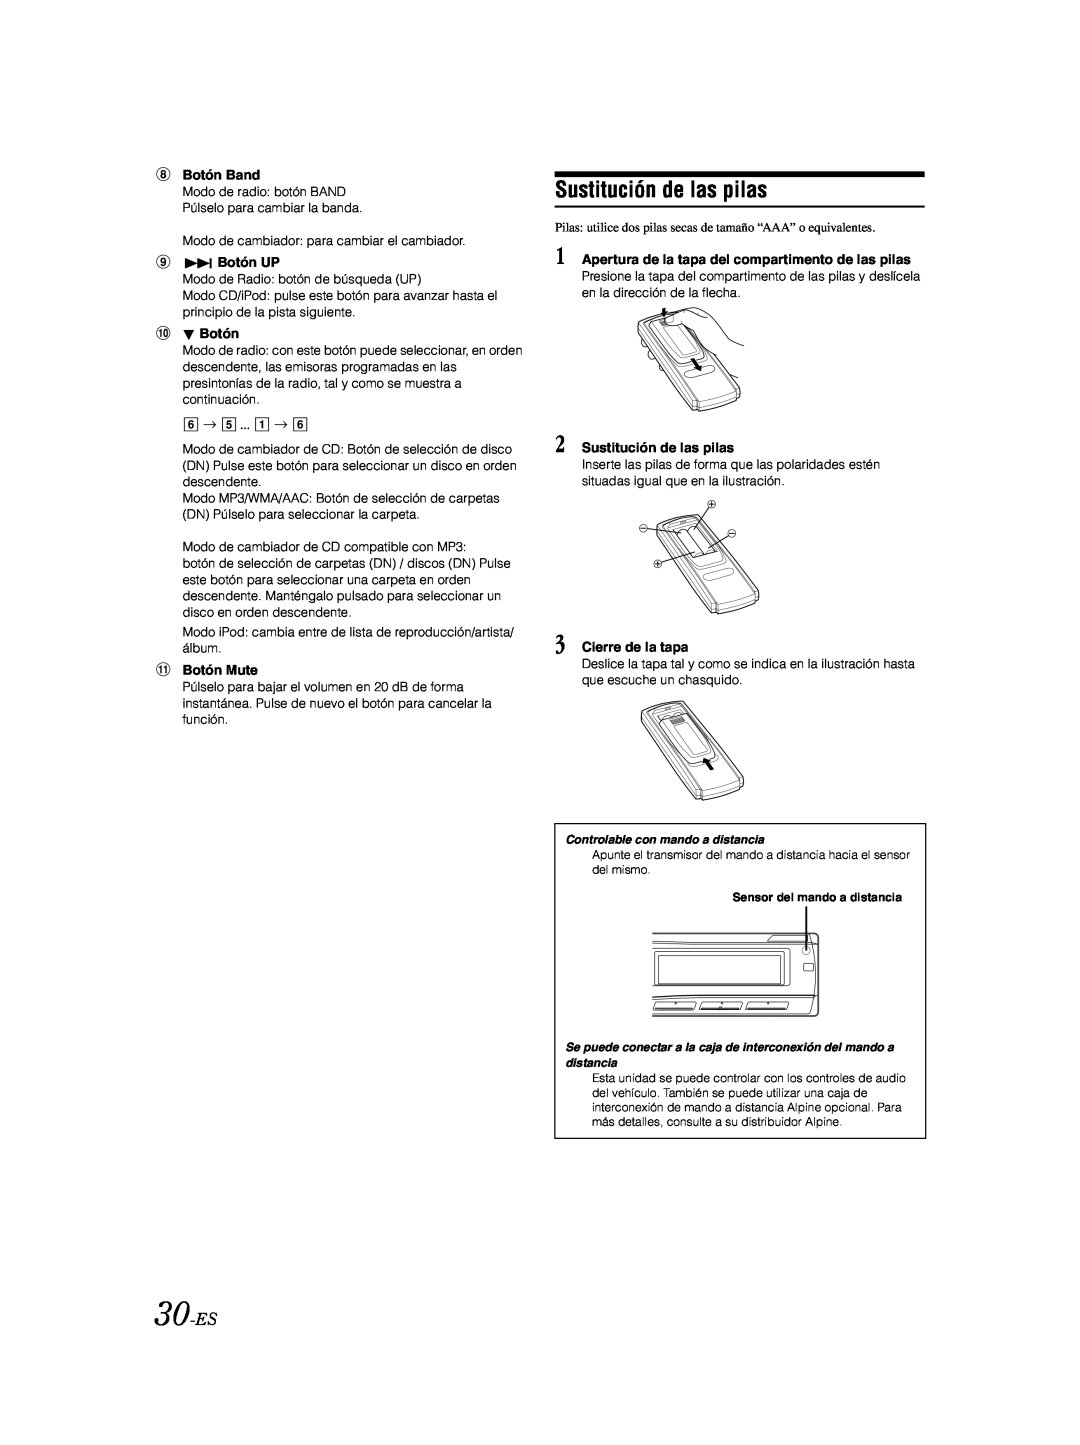 Alpine CDA-9885 owner manual Sustitución de las pilas, 30-ES 